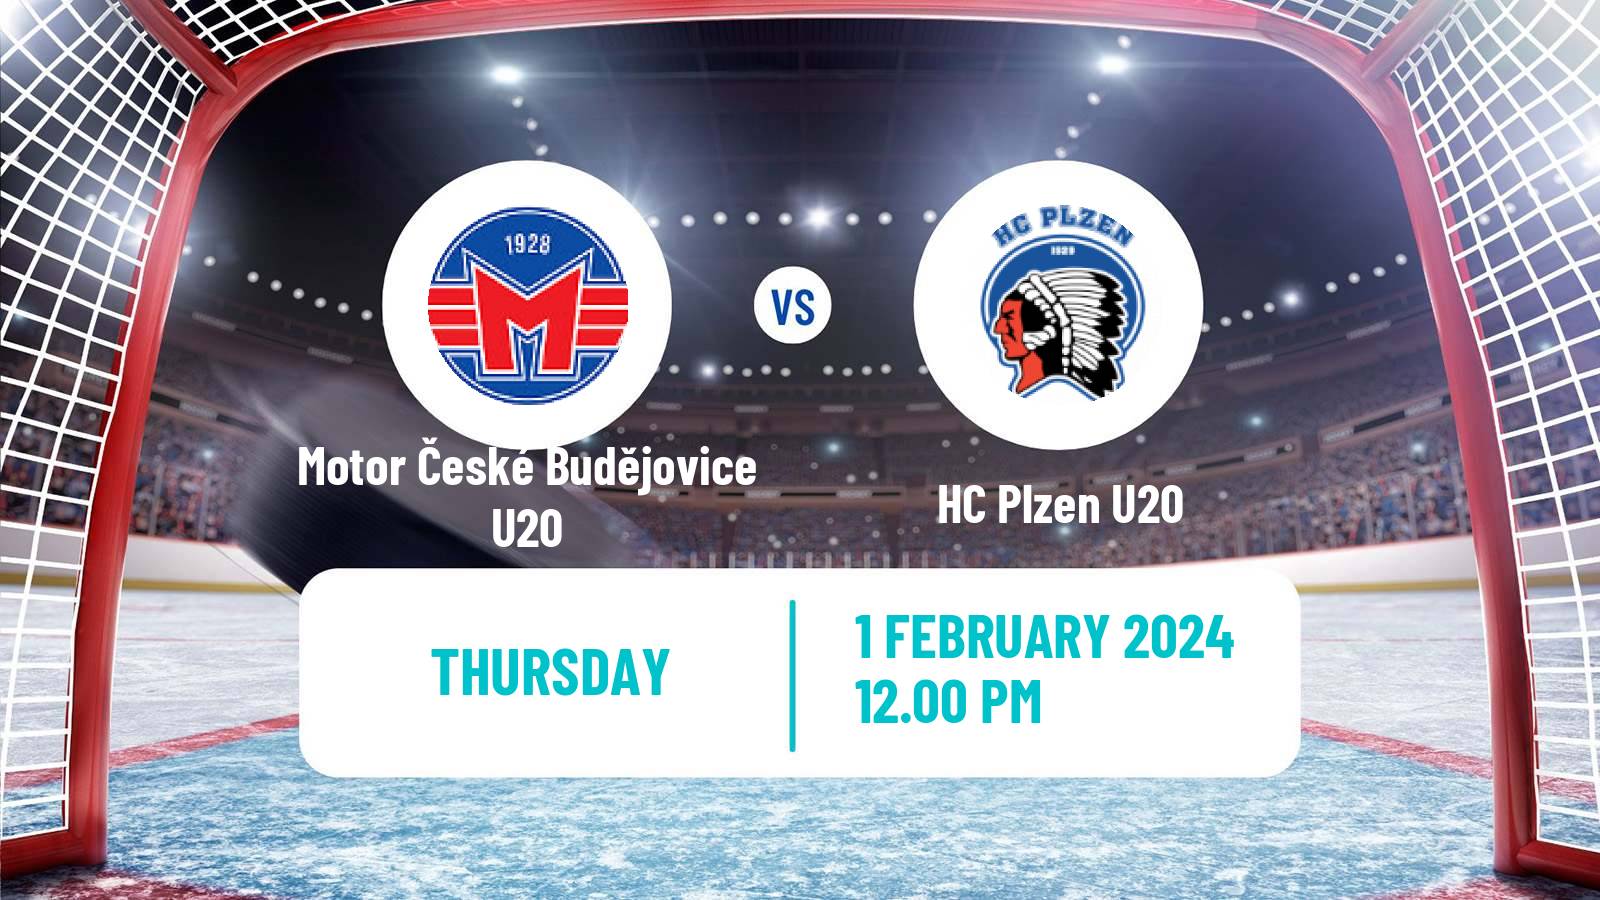 Hockey Czech ELJ Motor České Budějovice U20 - Plzen U20